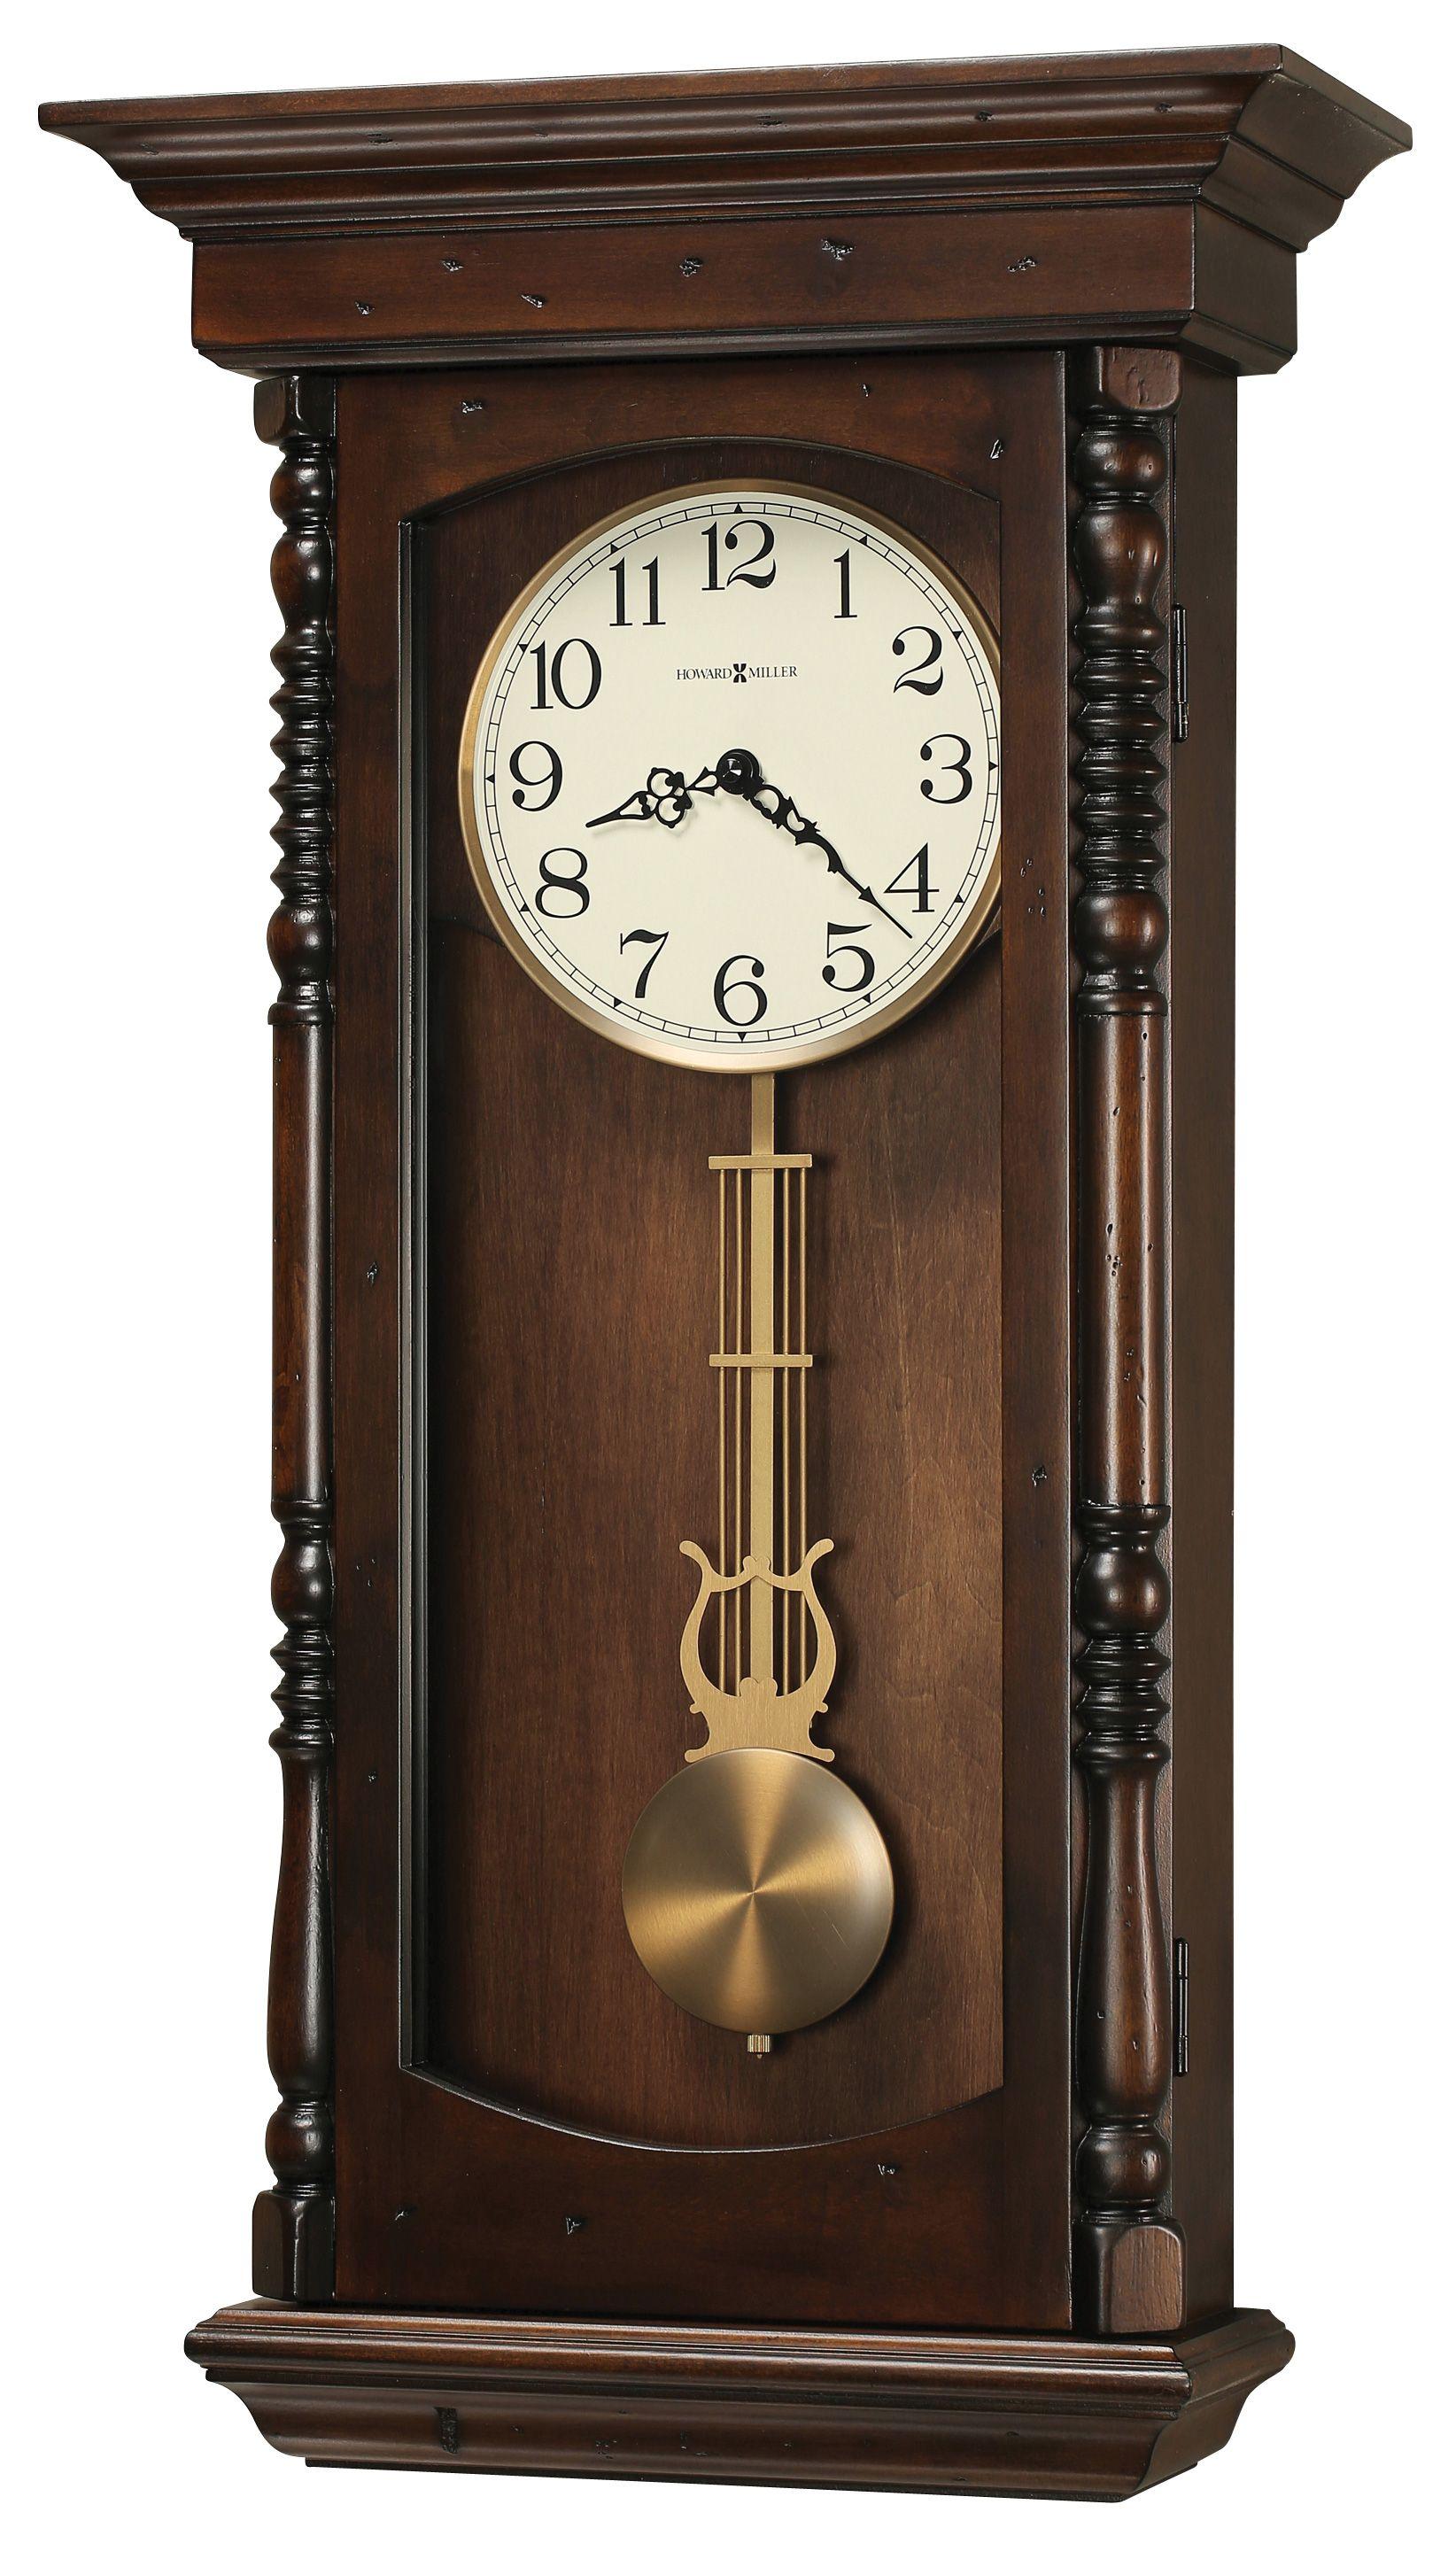 Корпус для настенных часов. Часы Howard Miller с маятником. Ховард Миллер часы. Часы настенные с маятником Howard Miller. Часы Ховард Миллер настенные.